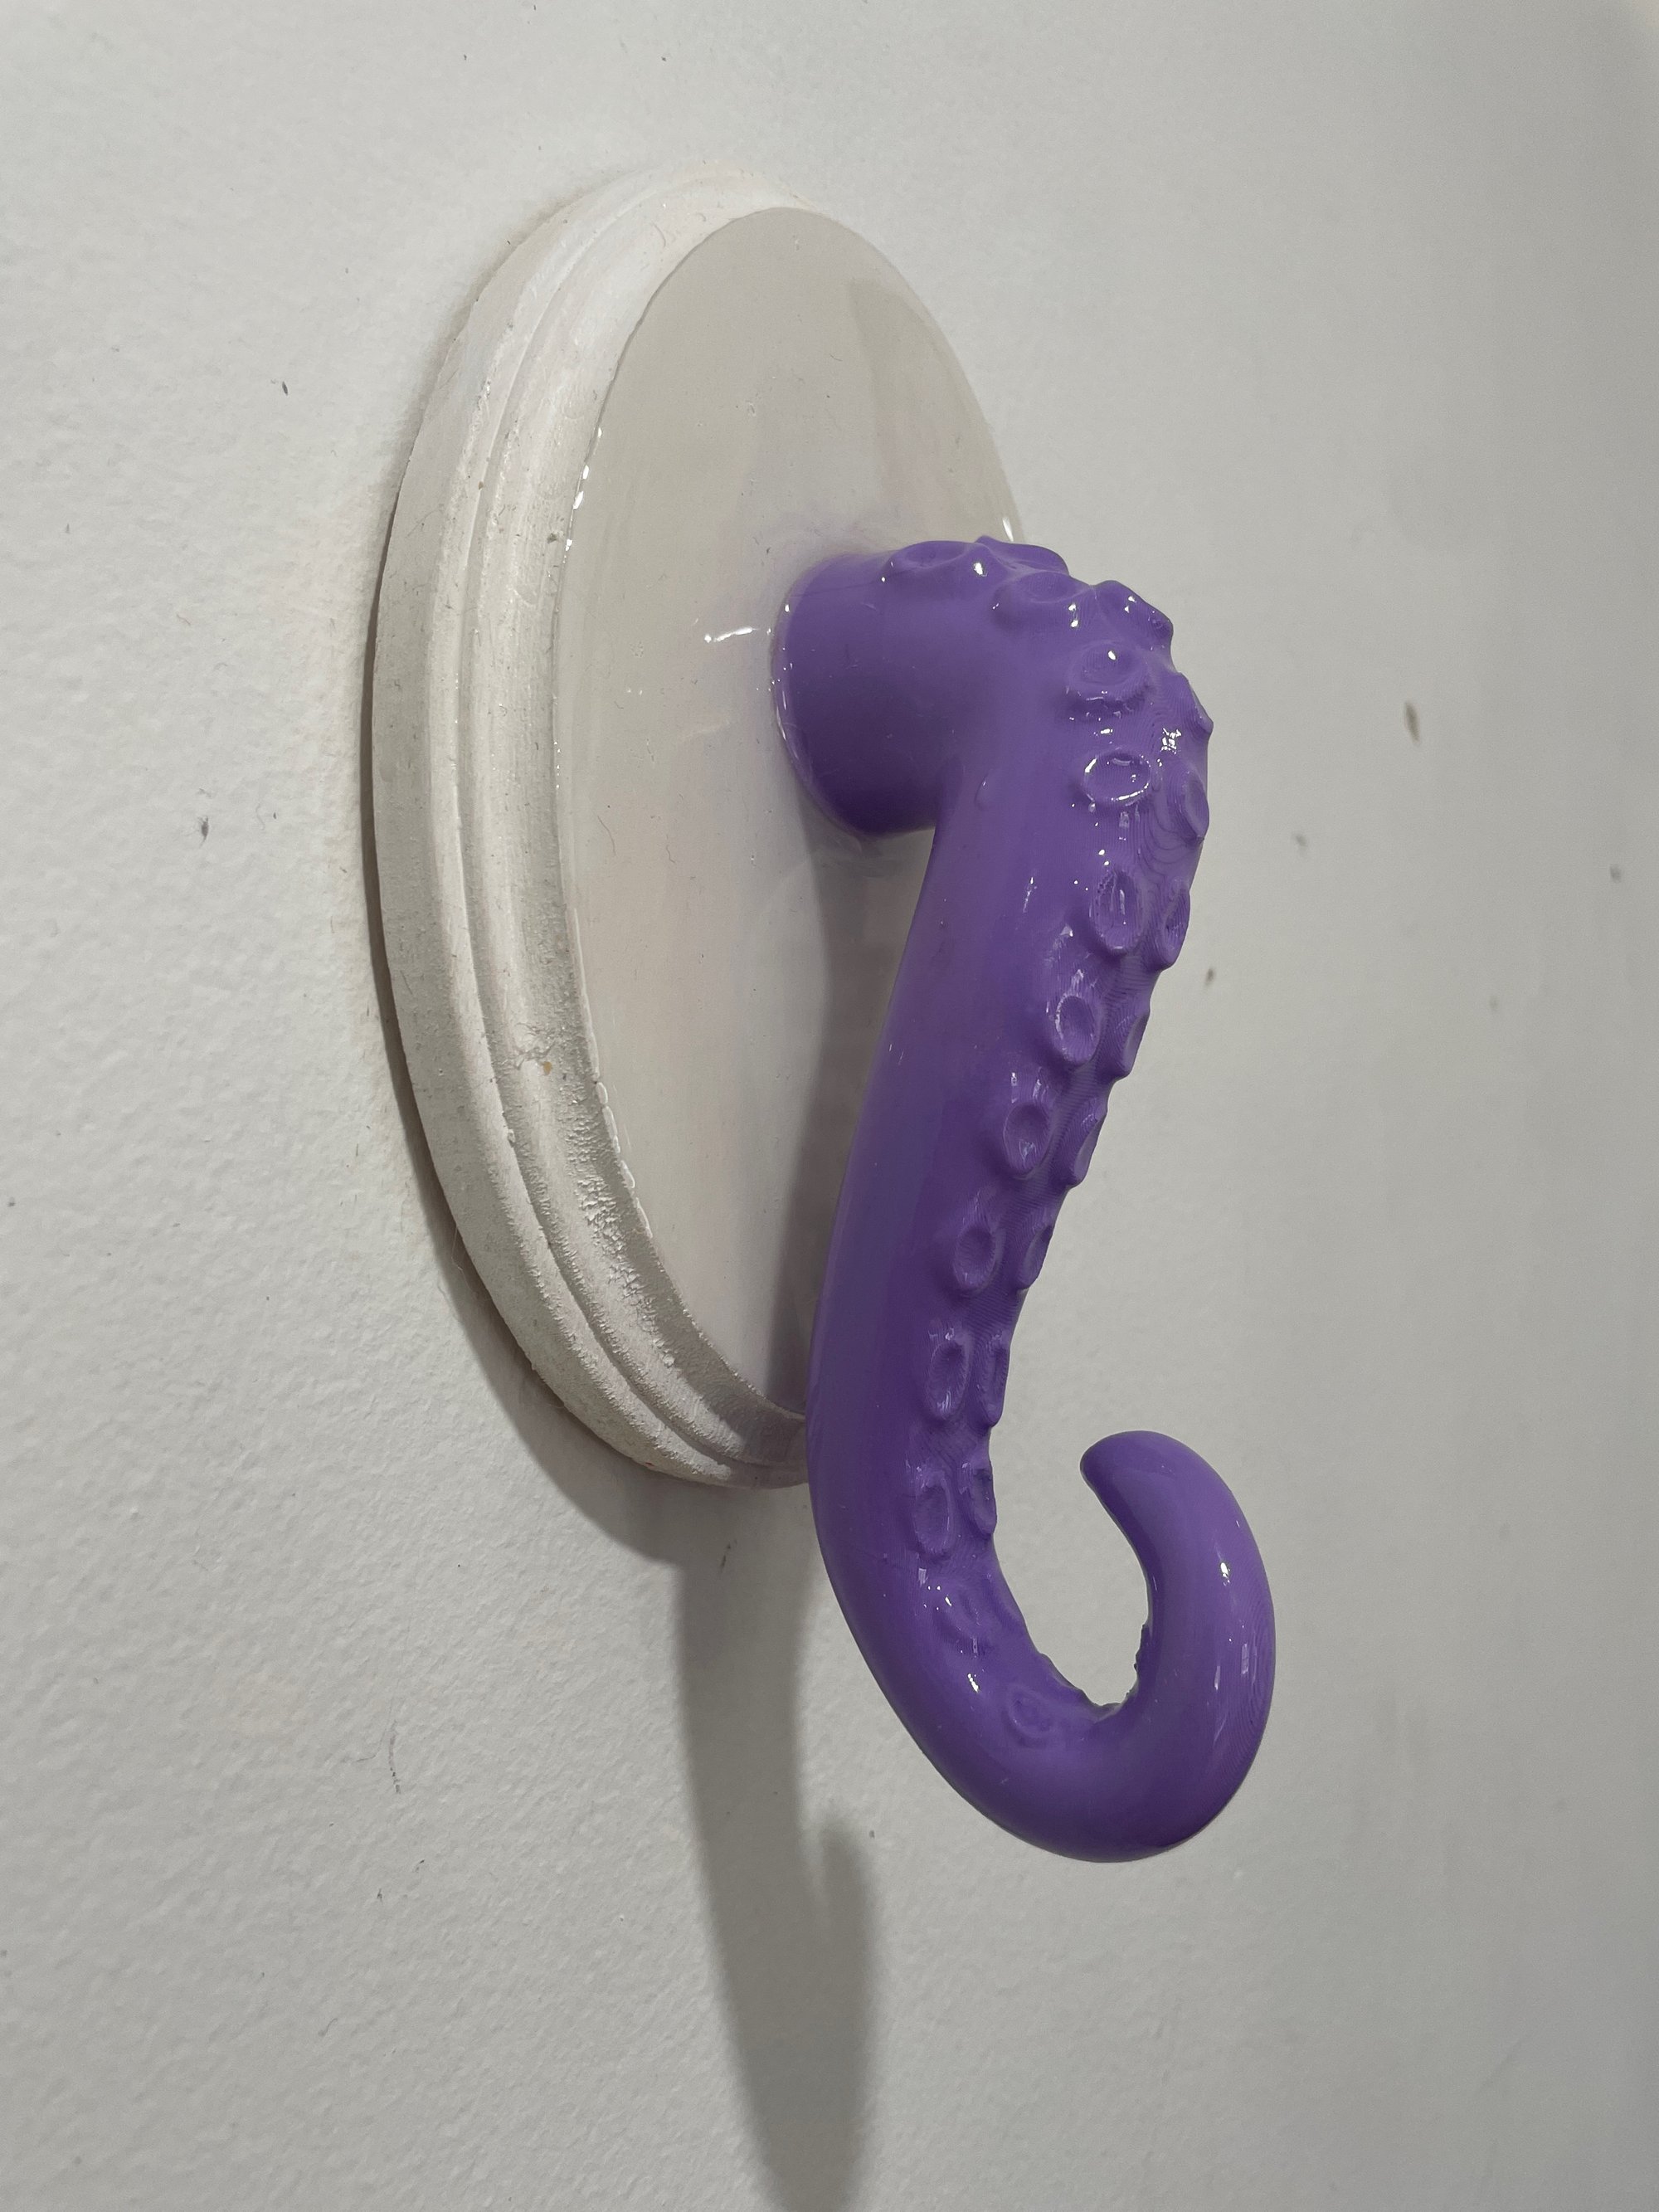 Octopus Tentacle Bathroom Towel Hook